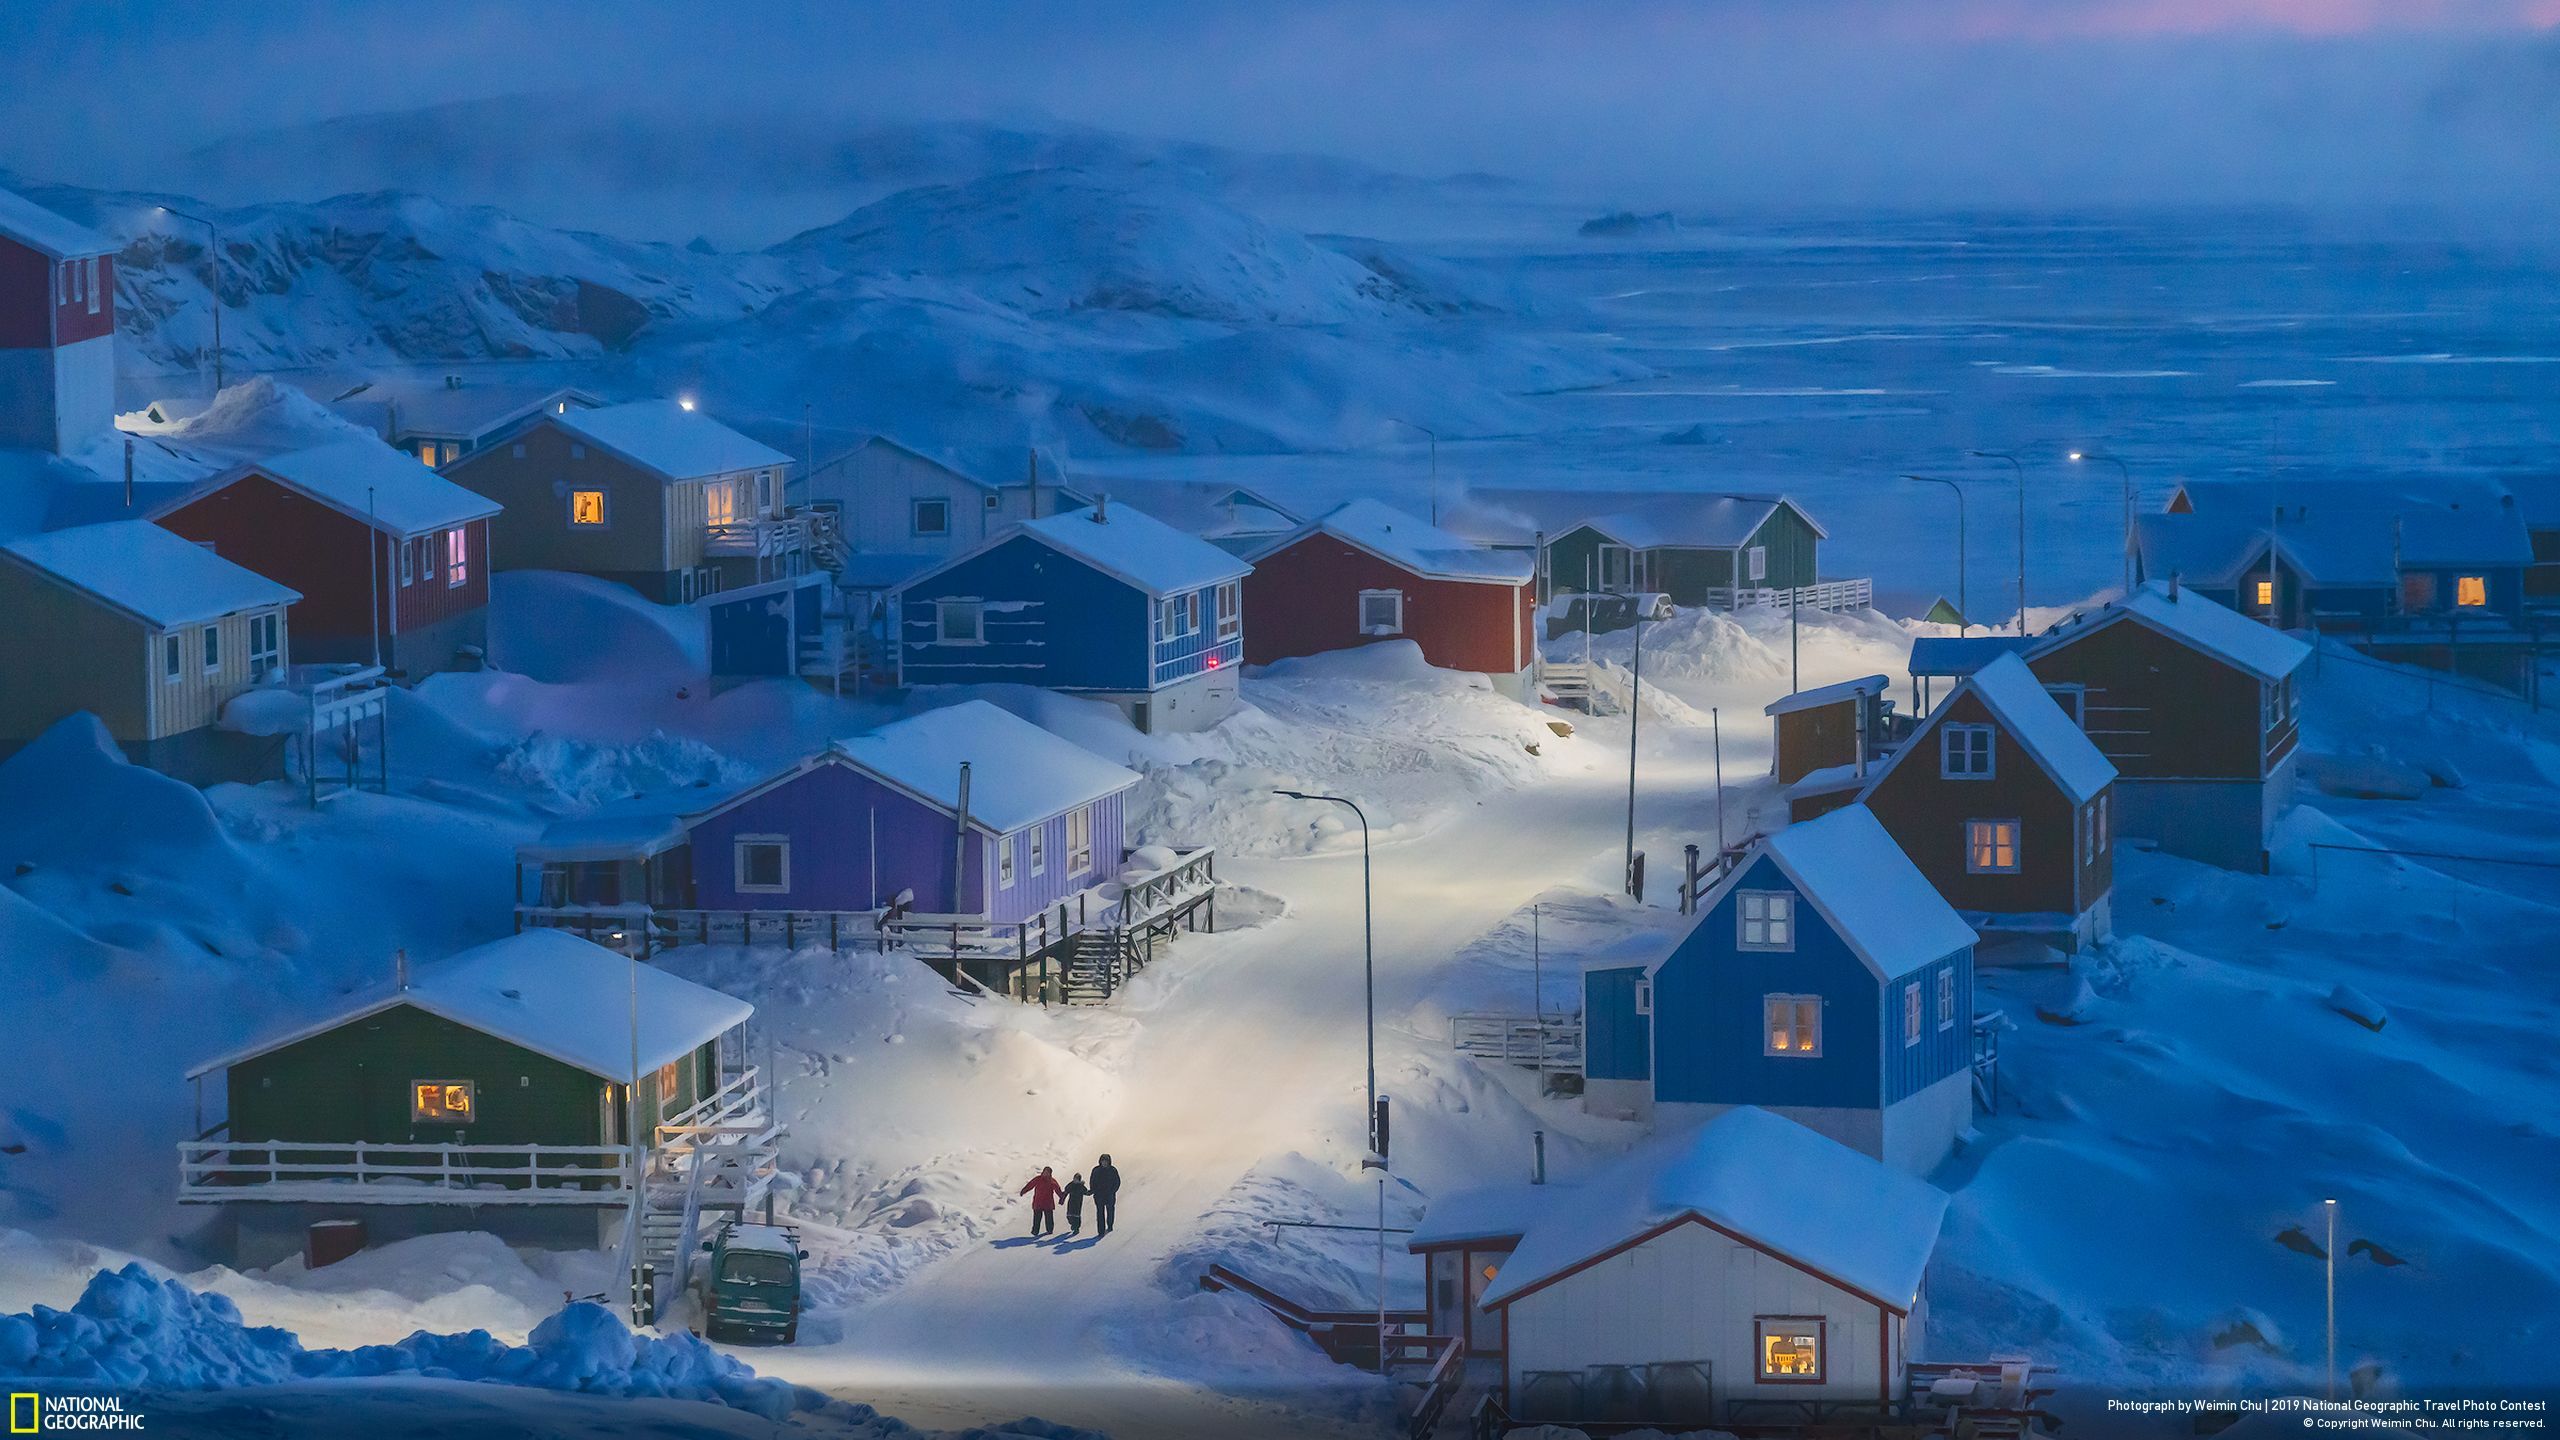 Bức ảnh đạt giải đặc biệt và giải nhất mục Đô thị thuộc về nhiếp ảnh gia Weimin Chu, chụp quang cảnh làng chài Upernavik nằm trên một hòn đảo nhỏ ở phía Tây Greenland khi đông đến. Chu đặt tên ảnh là “Winter in Greenland” (tạm dịch: “Mùa đông ở Greenland”).